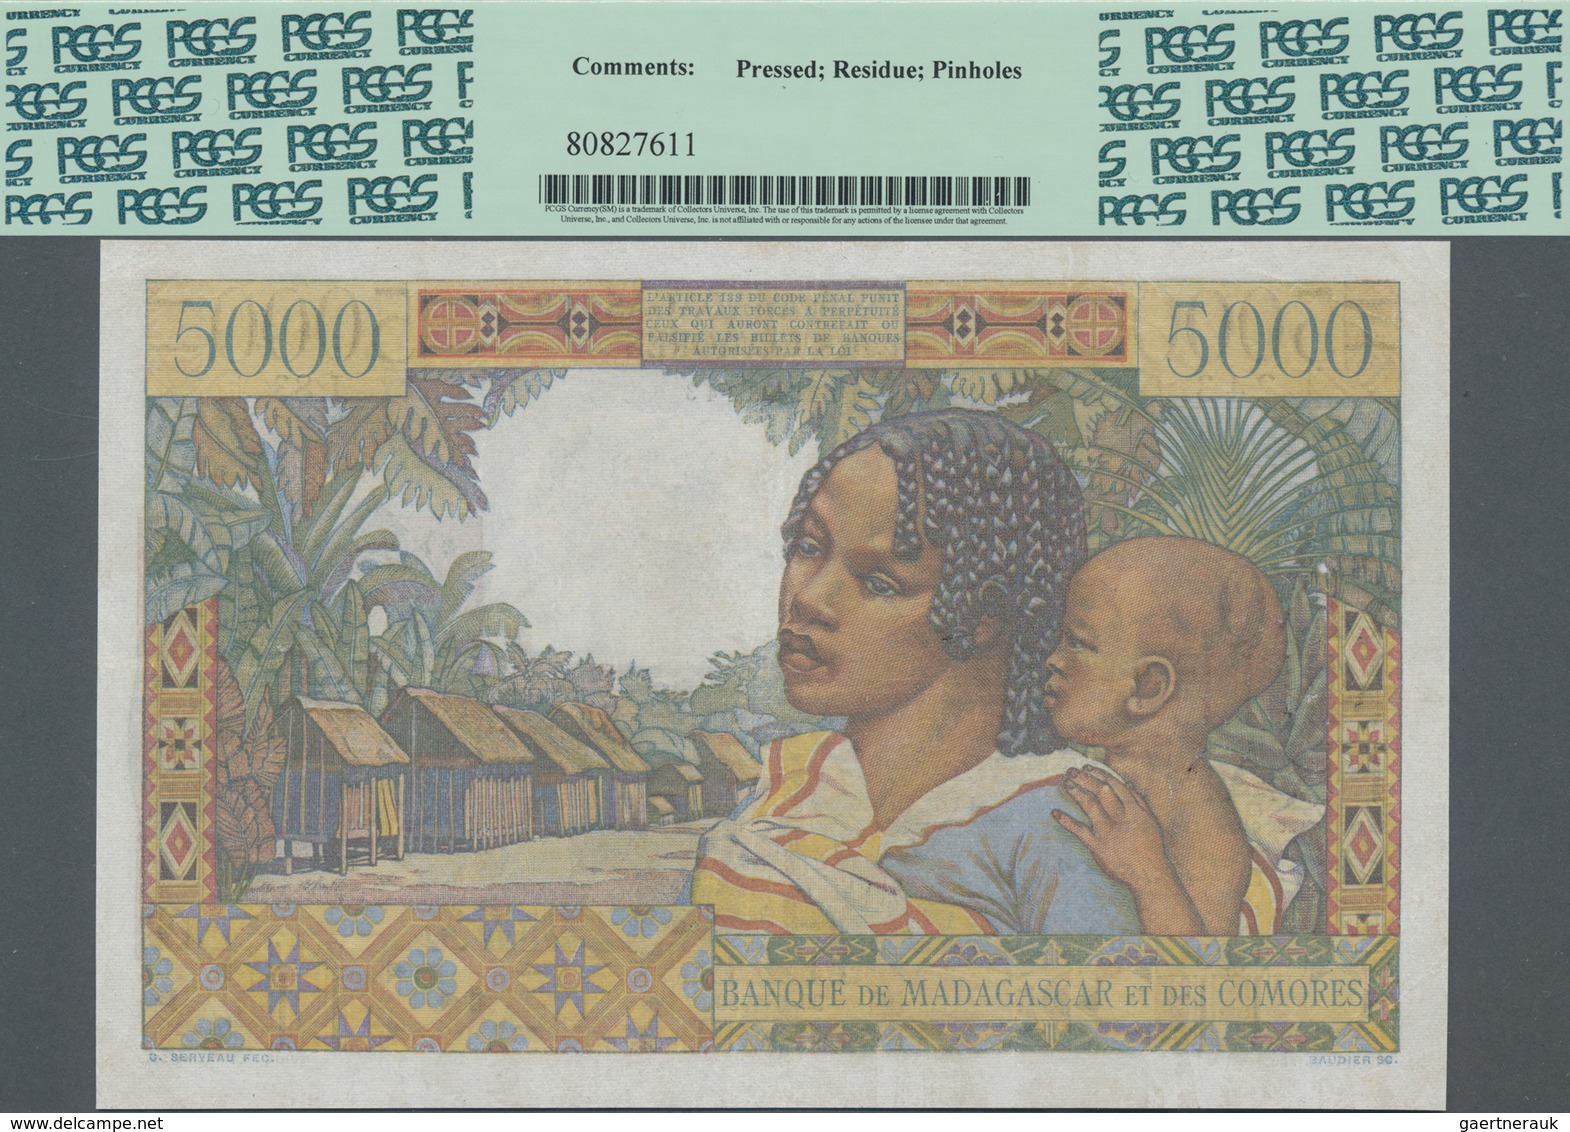 Madagascar: Banque De Madagascar Et Des Comores 5000 Francs 1950 With Signature Title Left: "Control - Madagascar